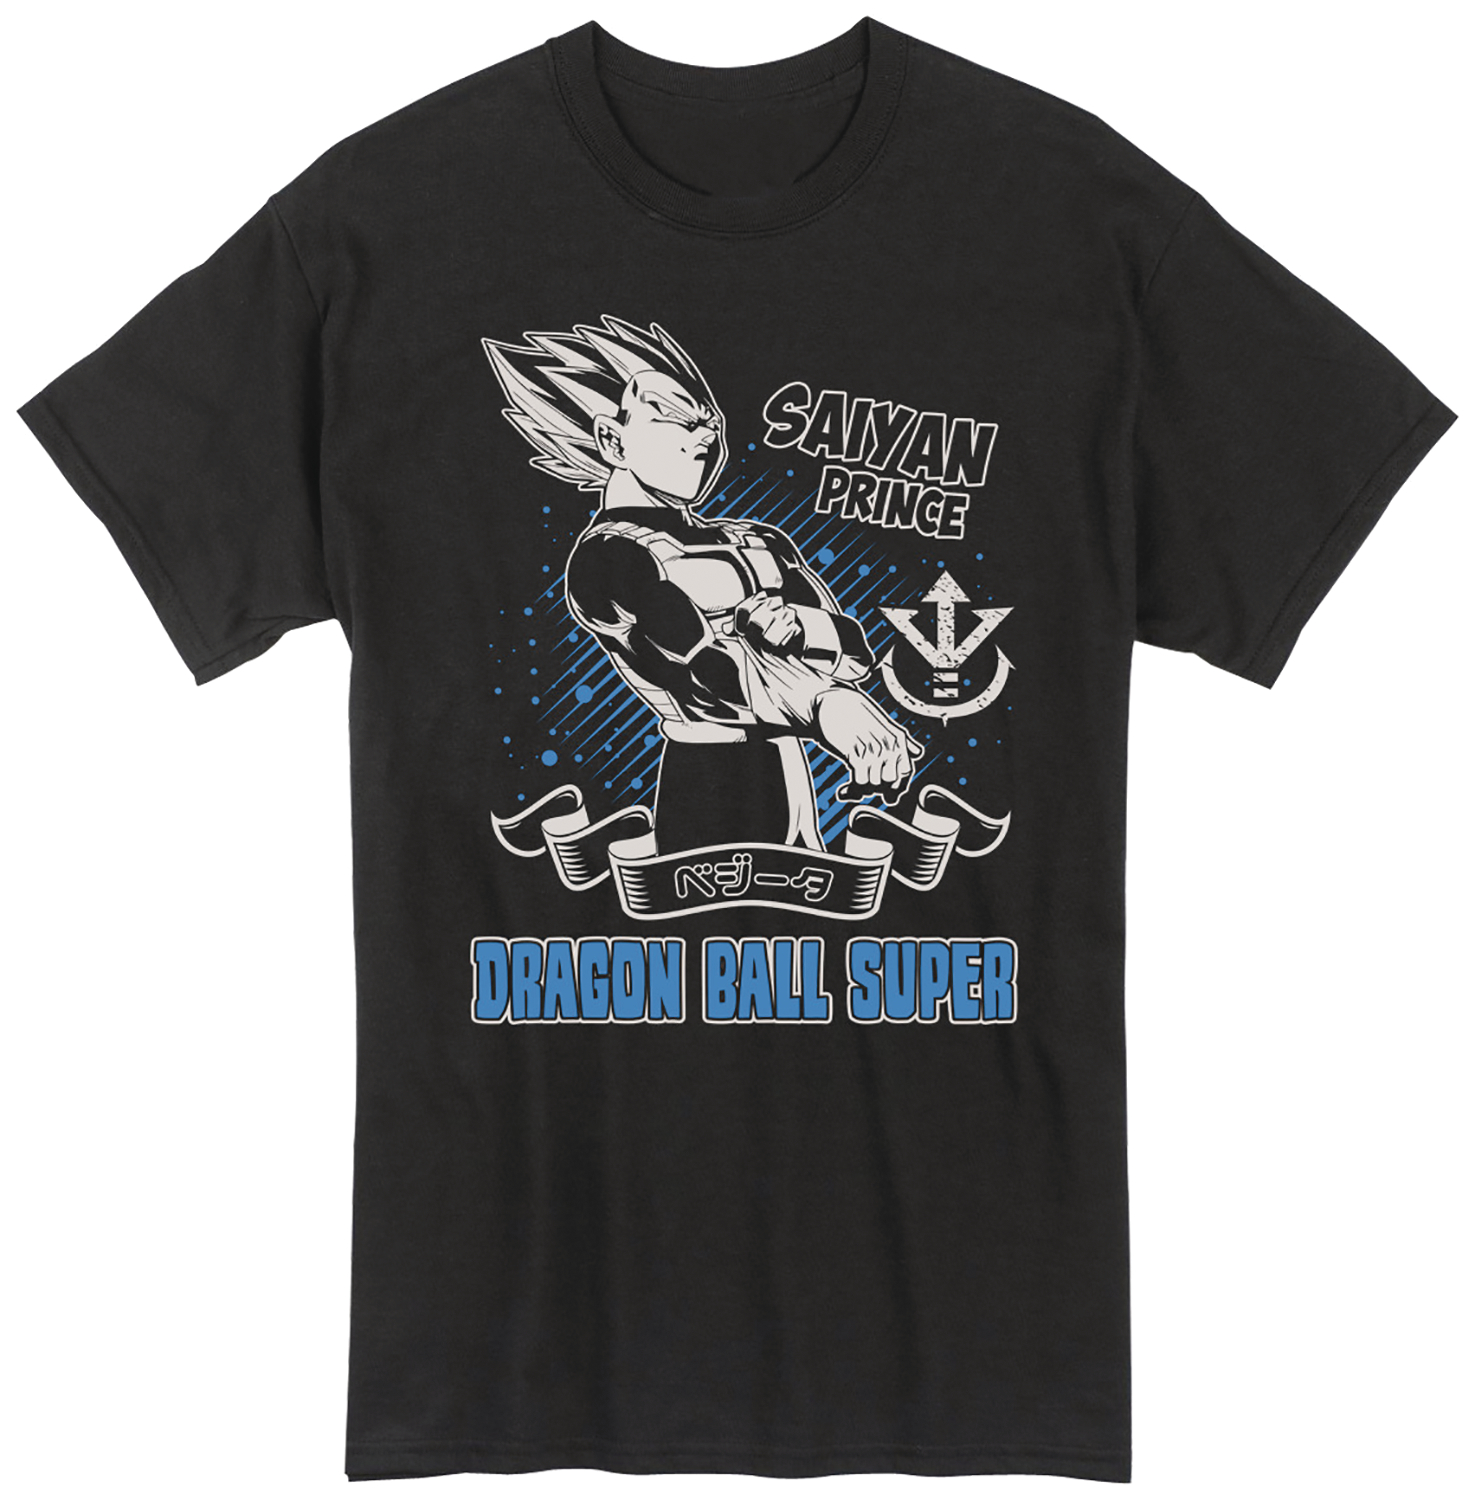 Dragon Ball Super Vegeta Saiyan Prince T-Shirt Small